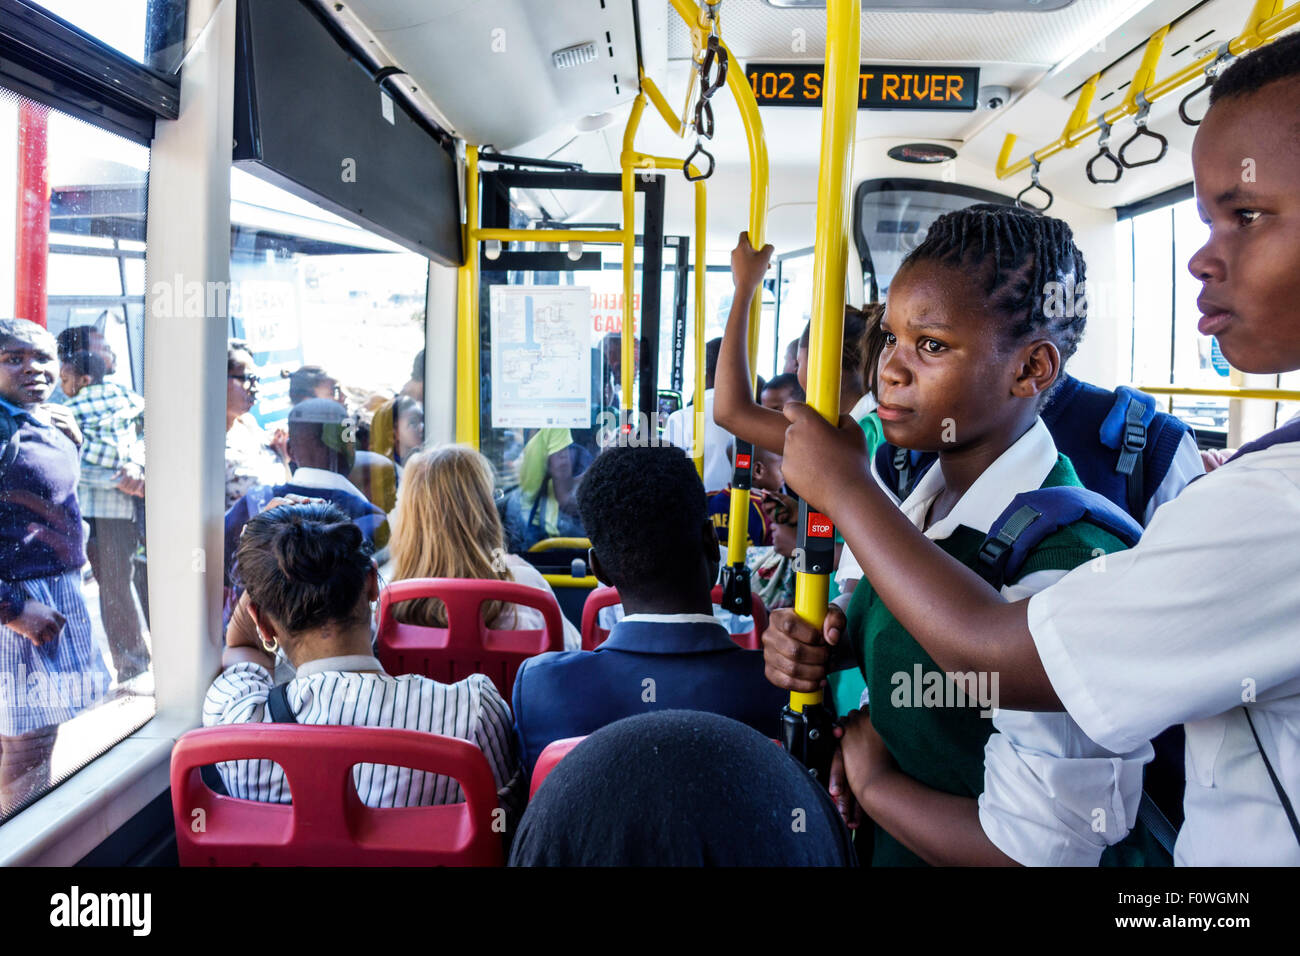 Ciudad del Cabo Sudáfrica, African, MyCiTi bus, transporte público, negros africanos africanos minoría étnica, afro-americanos, niños, estudiantes educa Foto de stock